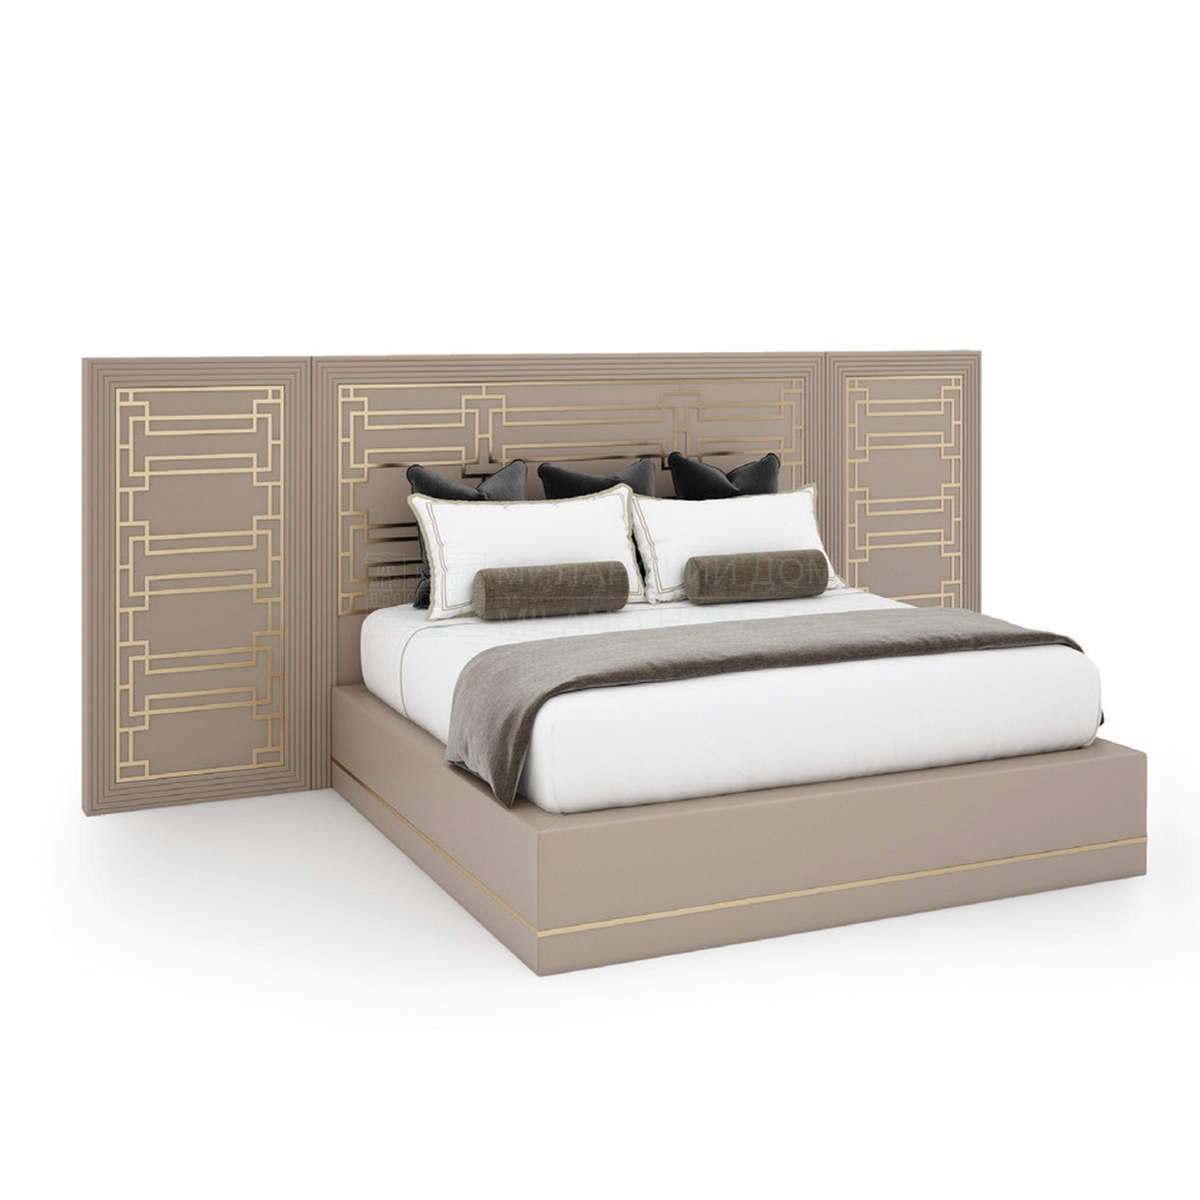 Двуспальная кровать Belair bed из Италии фабрики ASNAGHI / INEDITO